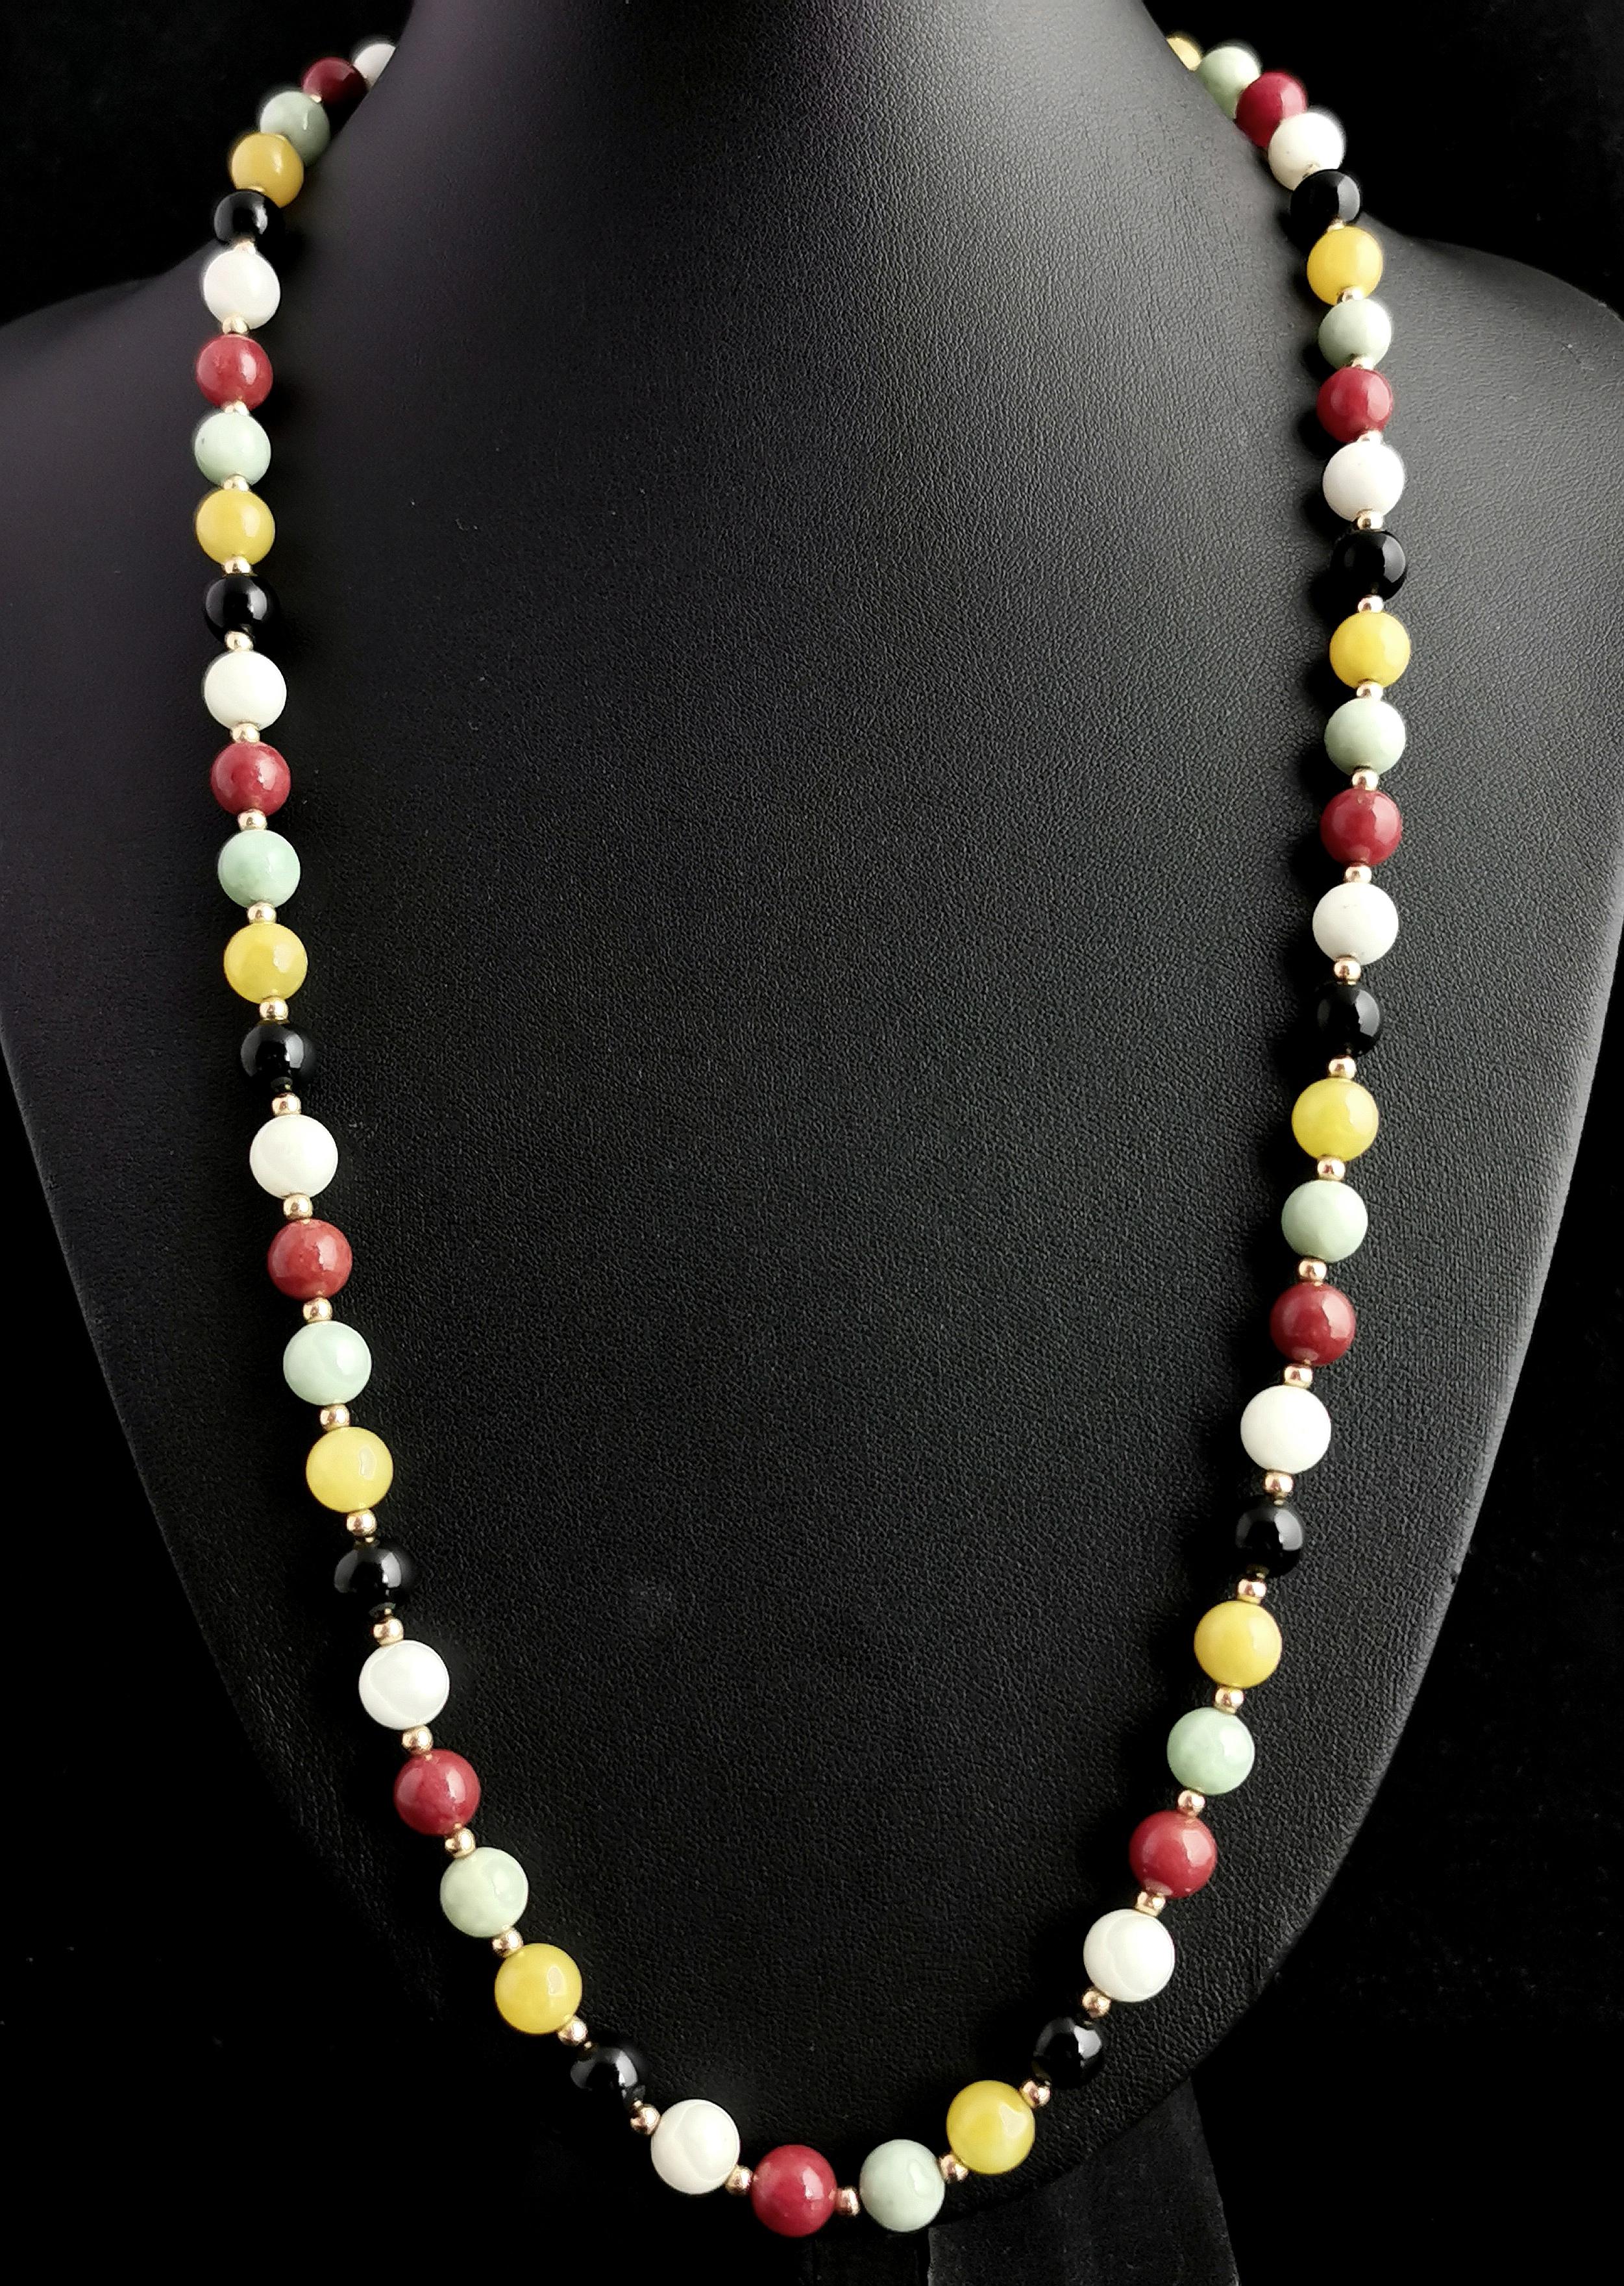 Un magnifique collier de perles multi-pierres, amusant et vibrant.

Il y a un éventail de couleurs et de pierres précieuses différentes sur cette pièce, ce qui lui donne un sentiment de joie et d'optimisme.

Les perles sont composées d'agate jaune,